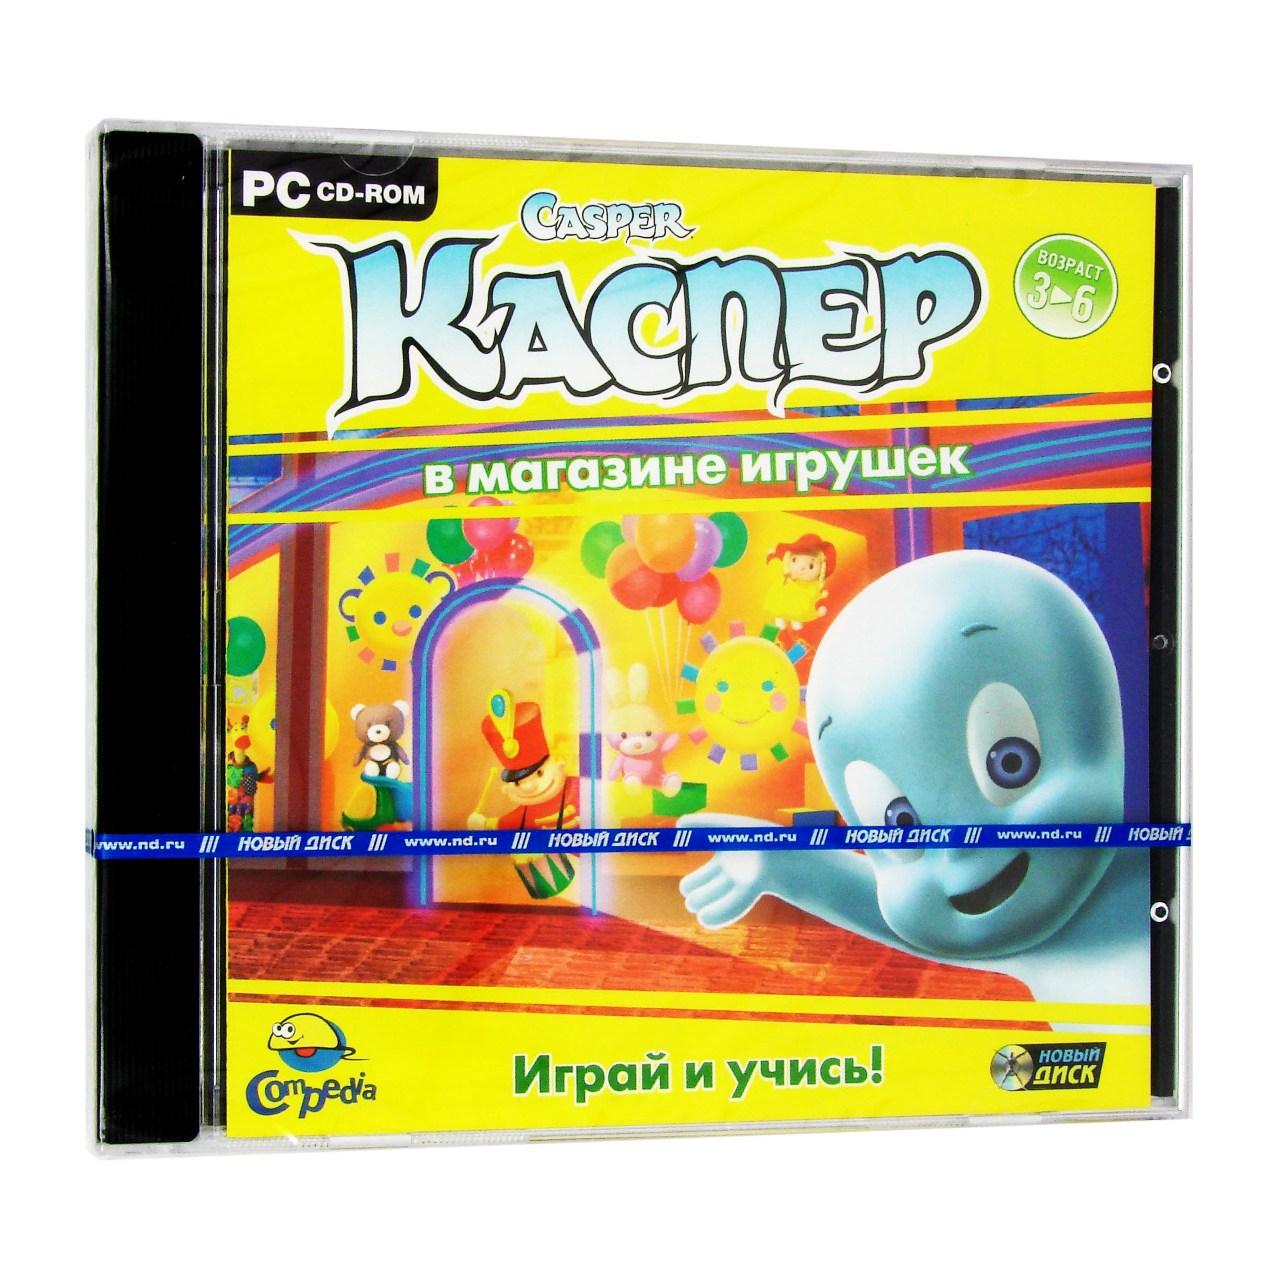 Компьютерный компакт-диск Каспер в магазине игрушек (ПК), фирма "Новый диск", 1CD